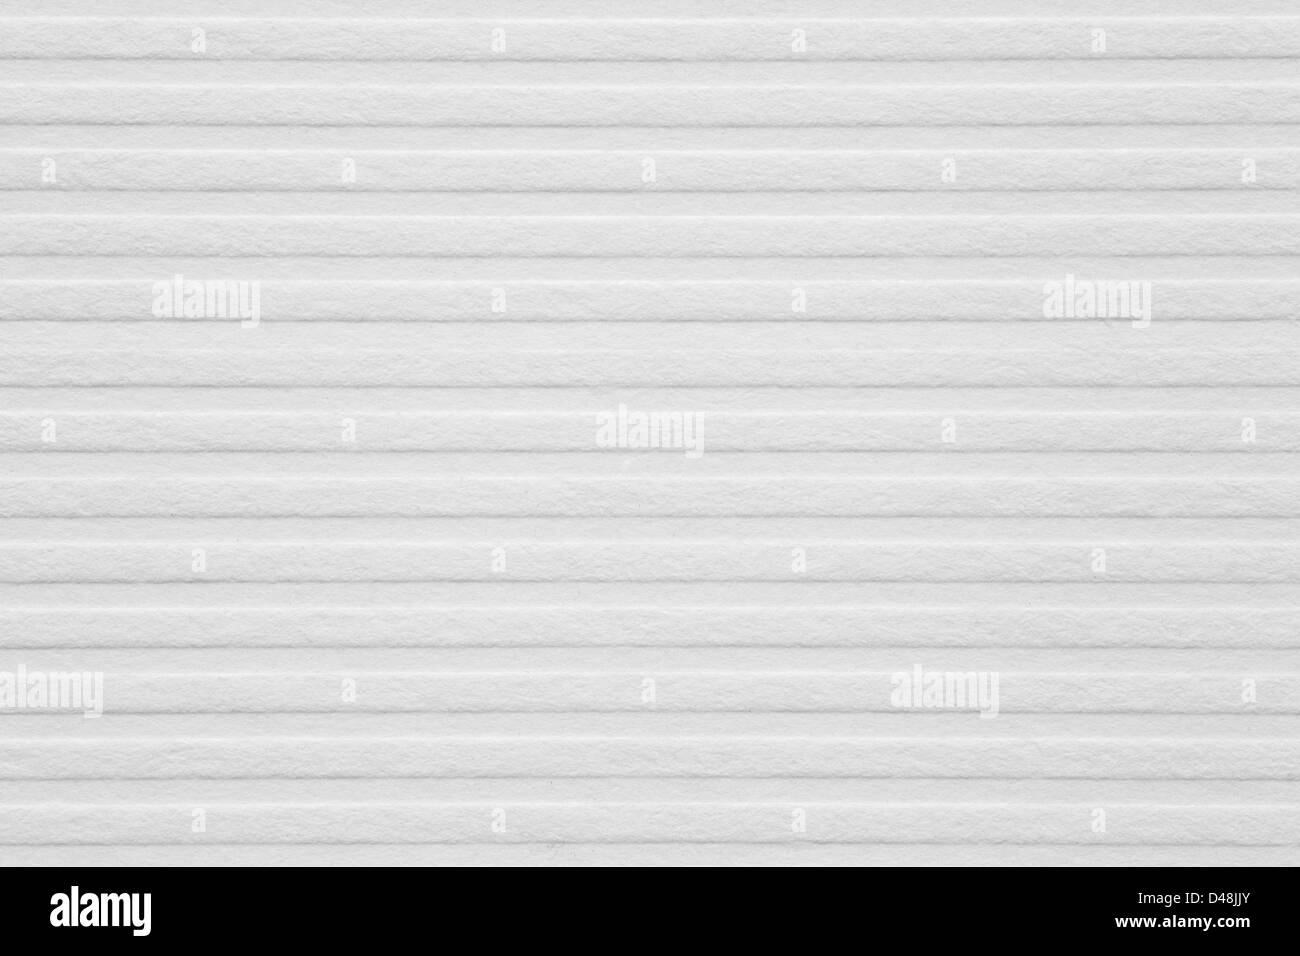 Libro bianco sullo sfondo 0r striscia orizzontale texture pattern Foto Stock